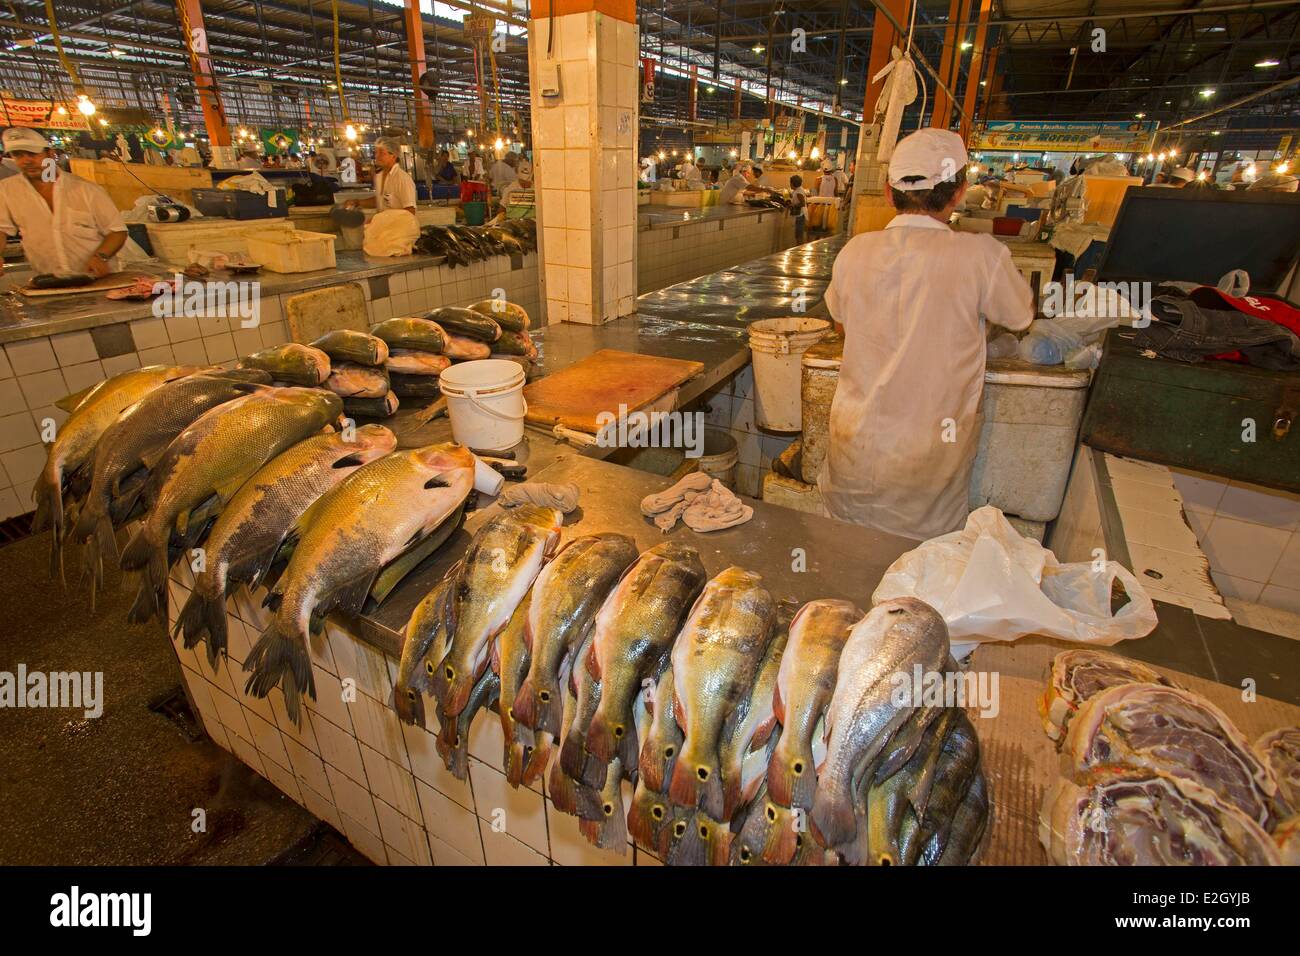 L'état d'Amazonas au Brésil Manaus Amazon River basin fish market Butterfly peacock bass Banque D'Images